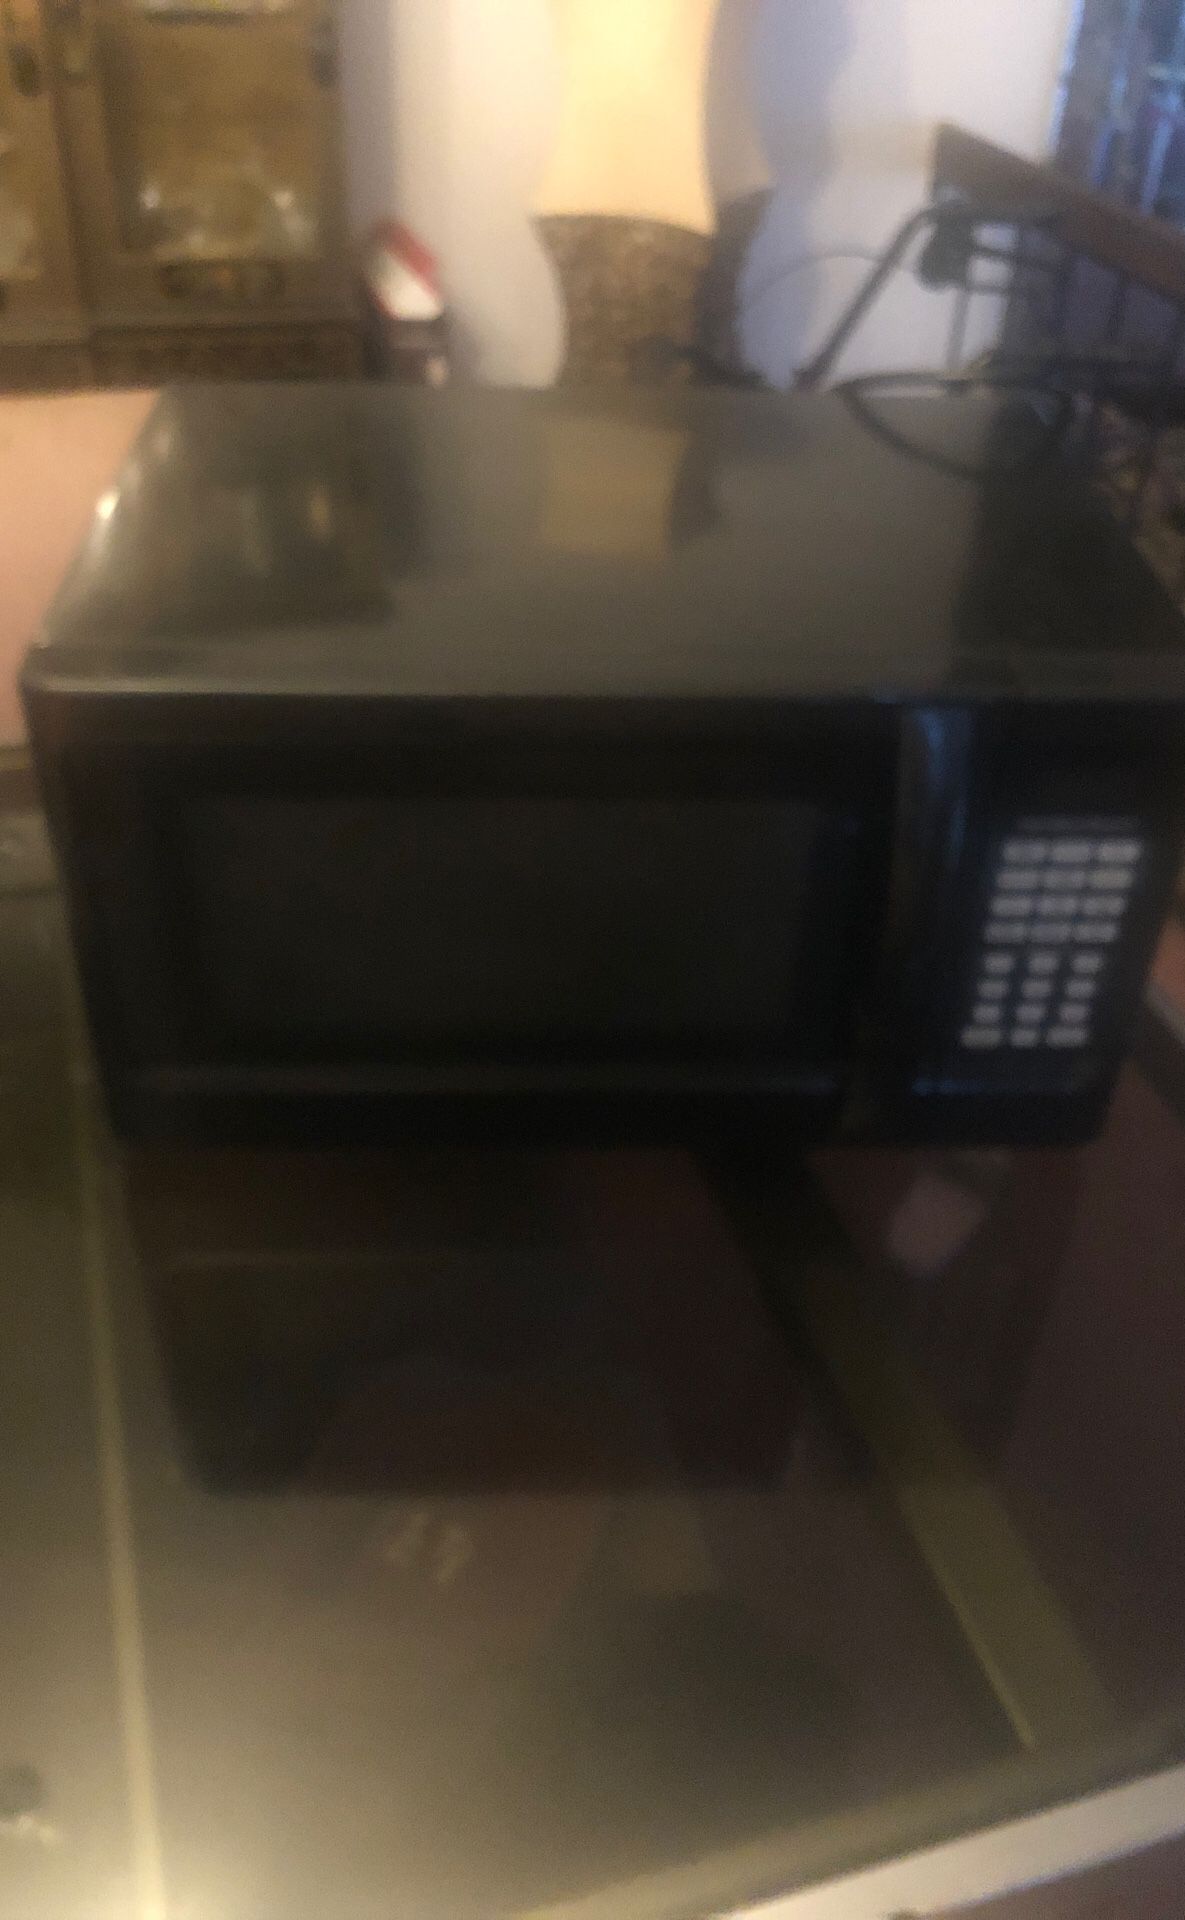 Hamilton Beach microwave